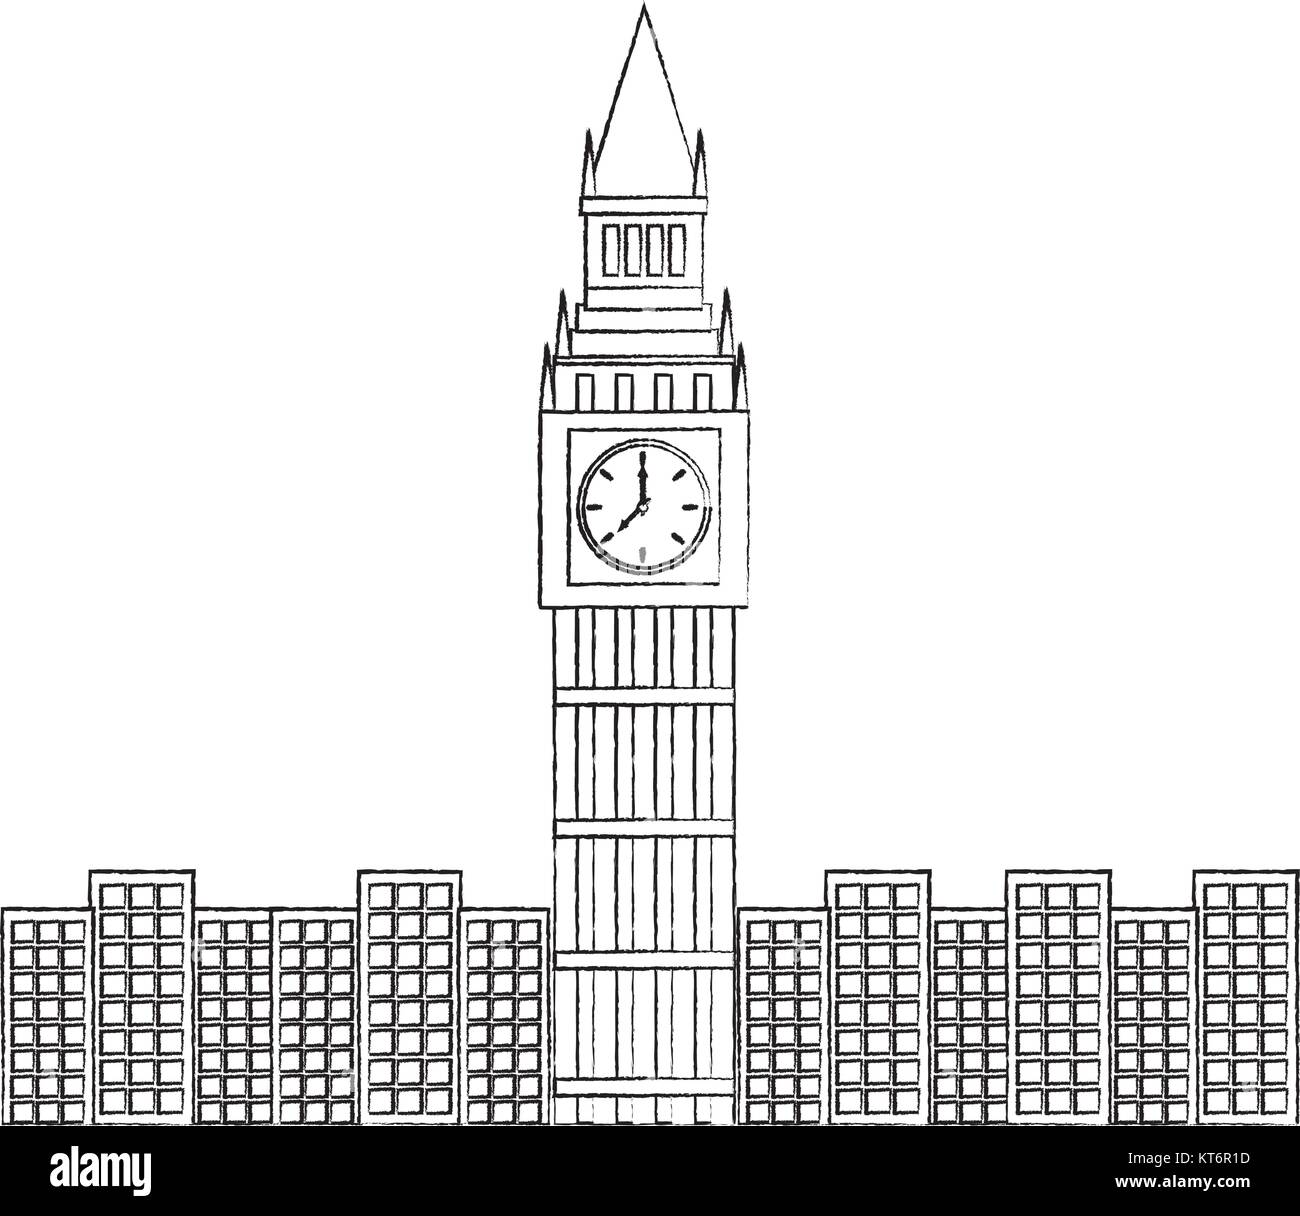 big ben london united kingdom icon image vector illustrationd design black  sketch line Stock Vector Image & Art - Alamy